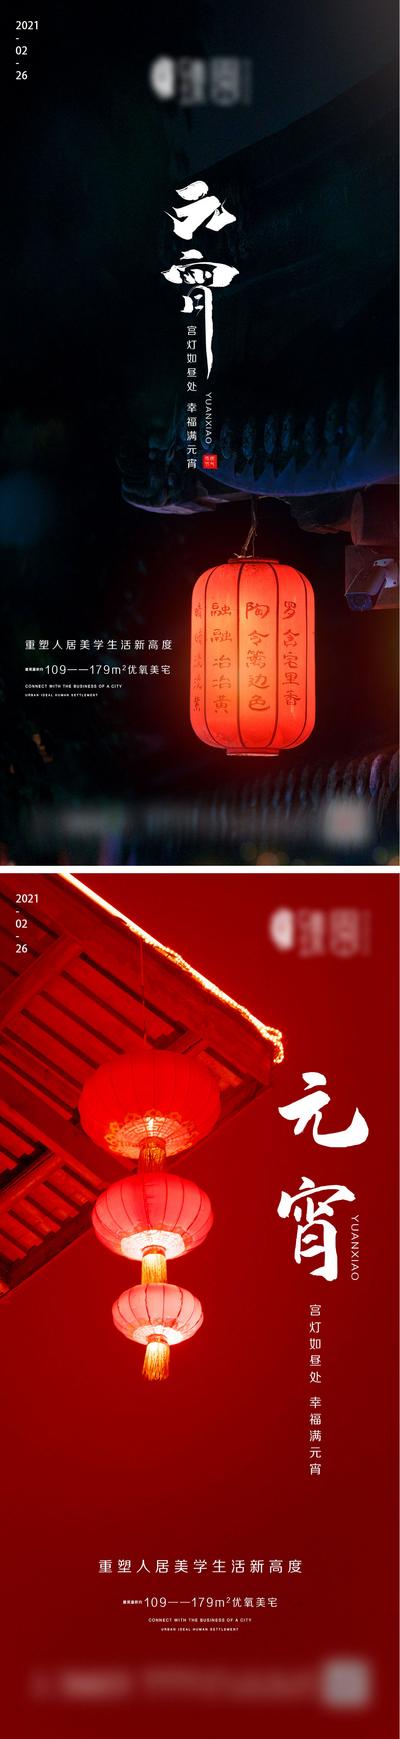 南门网 海报 房地产 中国传统节日 元宵节  灯笼  中式